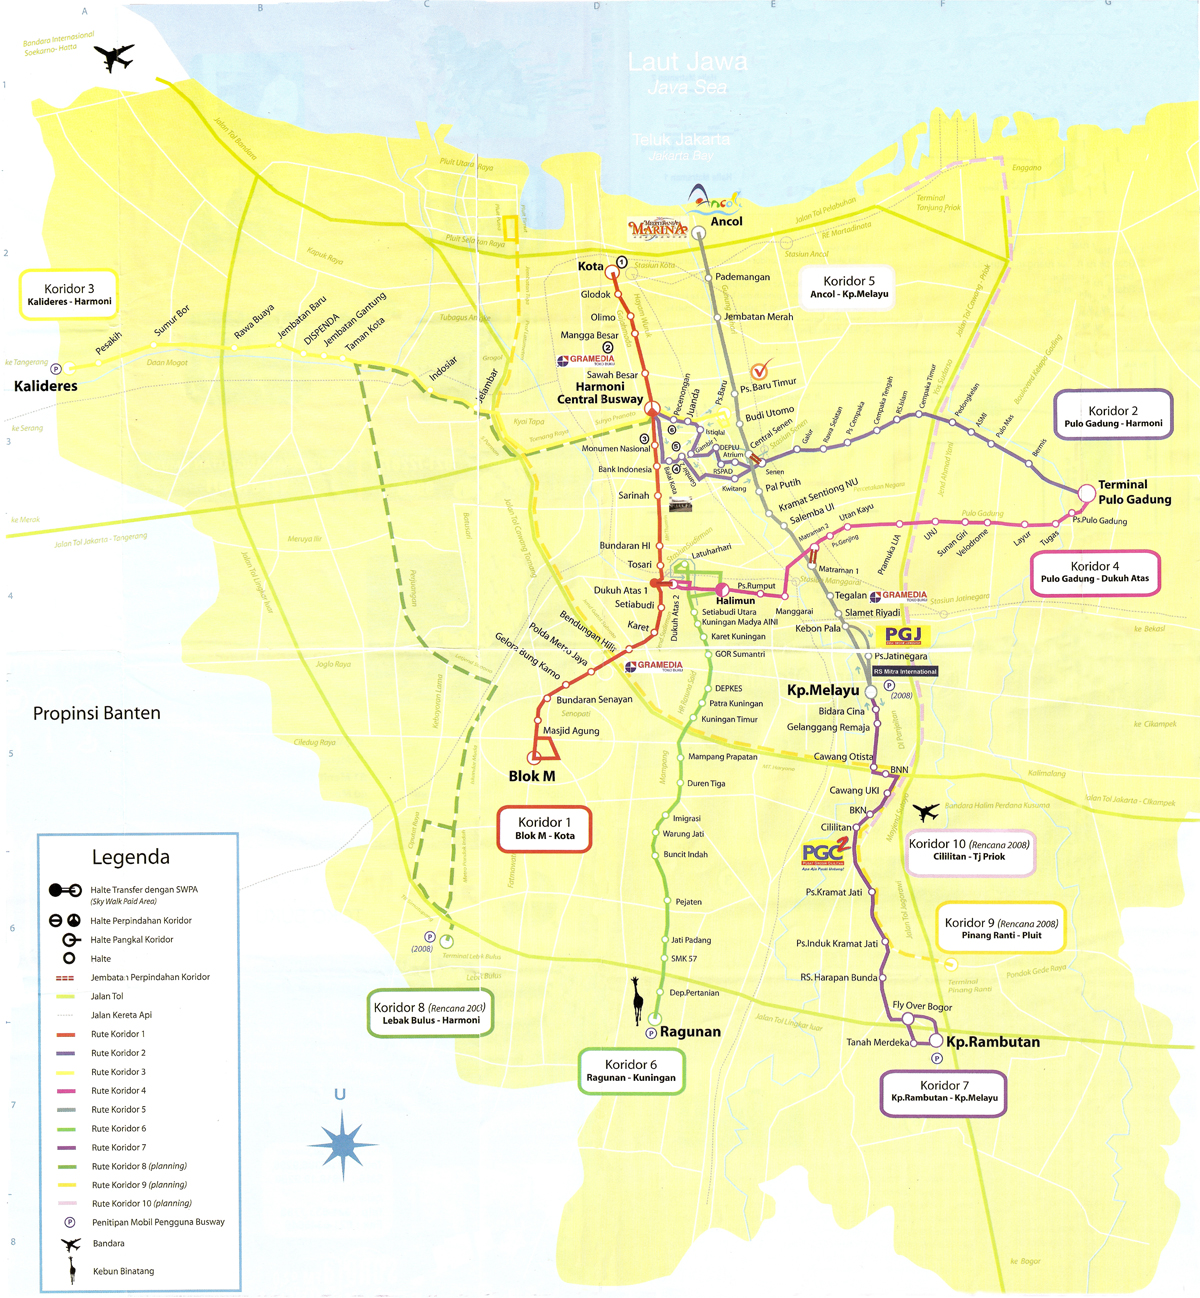 Подробная схема метро Джакарты